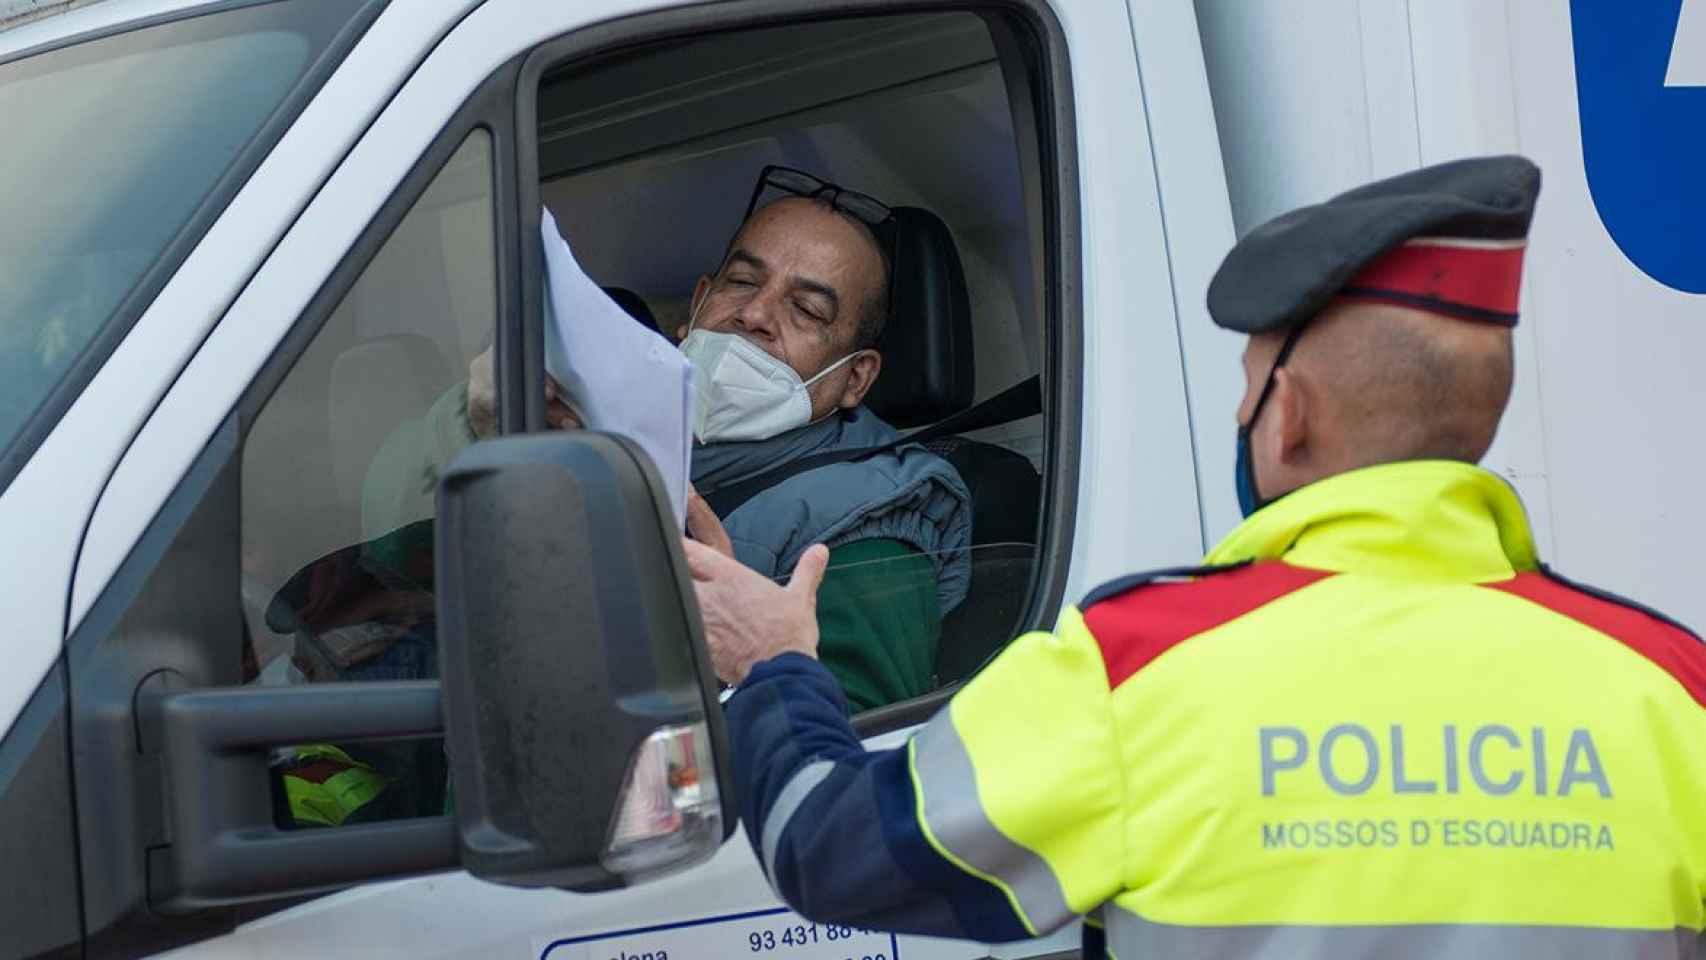 Un mosso pide documentación a un conductor durante el control policial / GLORIA SÁNCHEZ